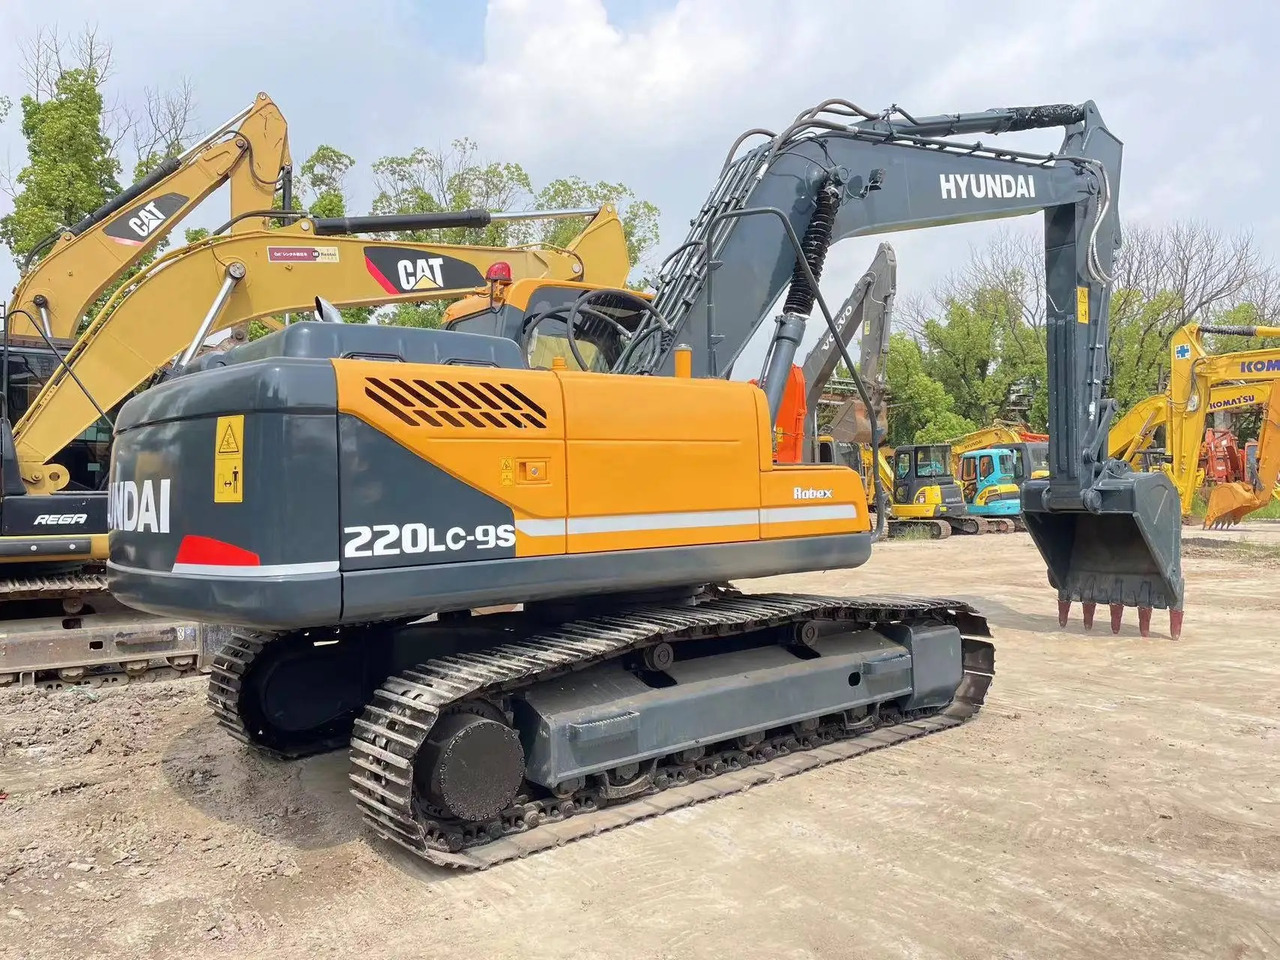 Lánctalpas kotró HYUNDAI R220 -9S track excavator 22 tons Korean hydraulic digger: 3 kép.